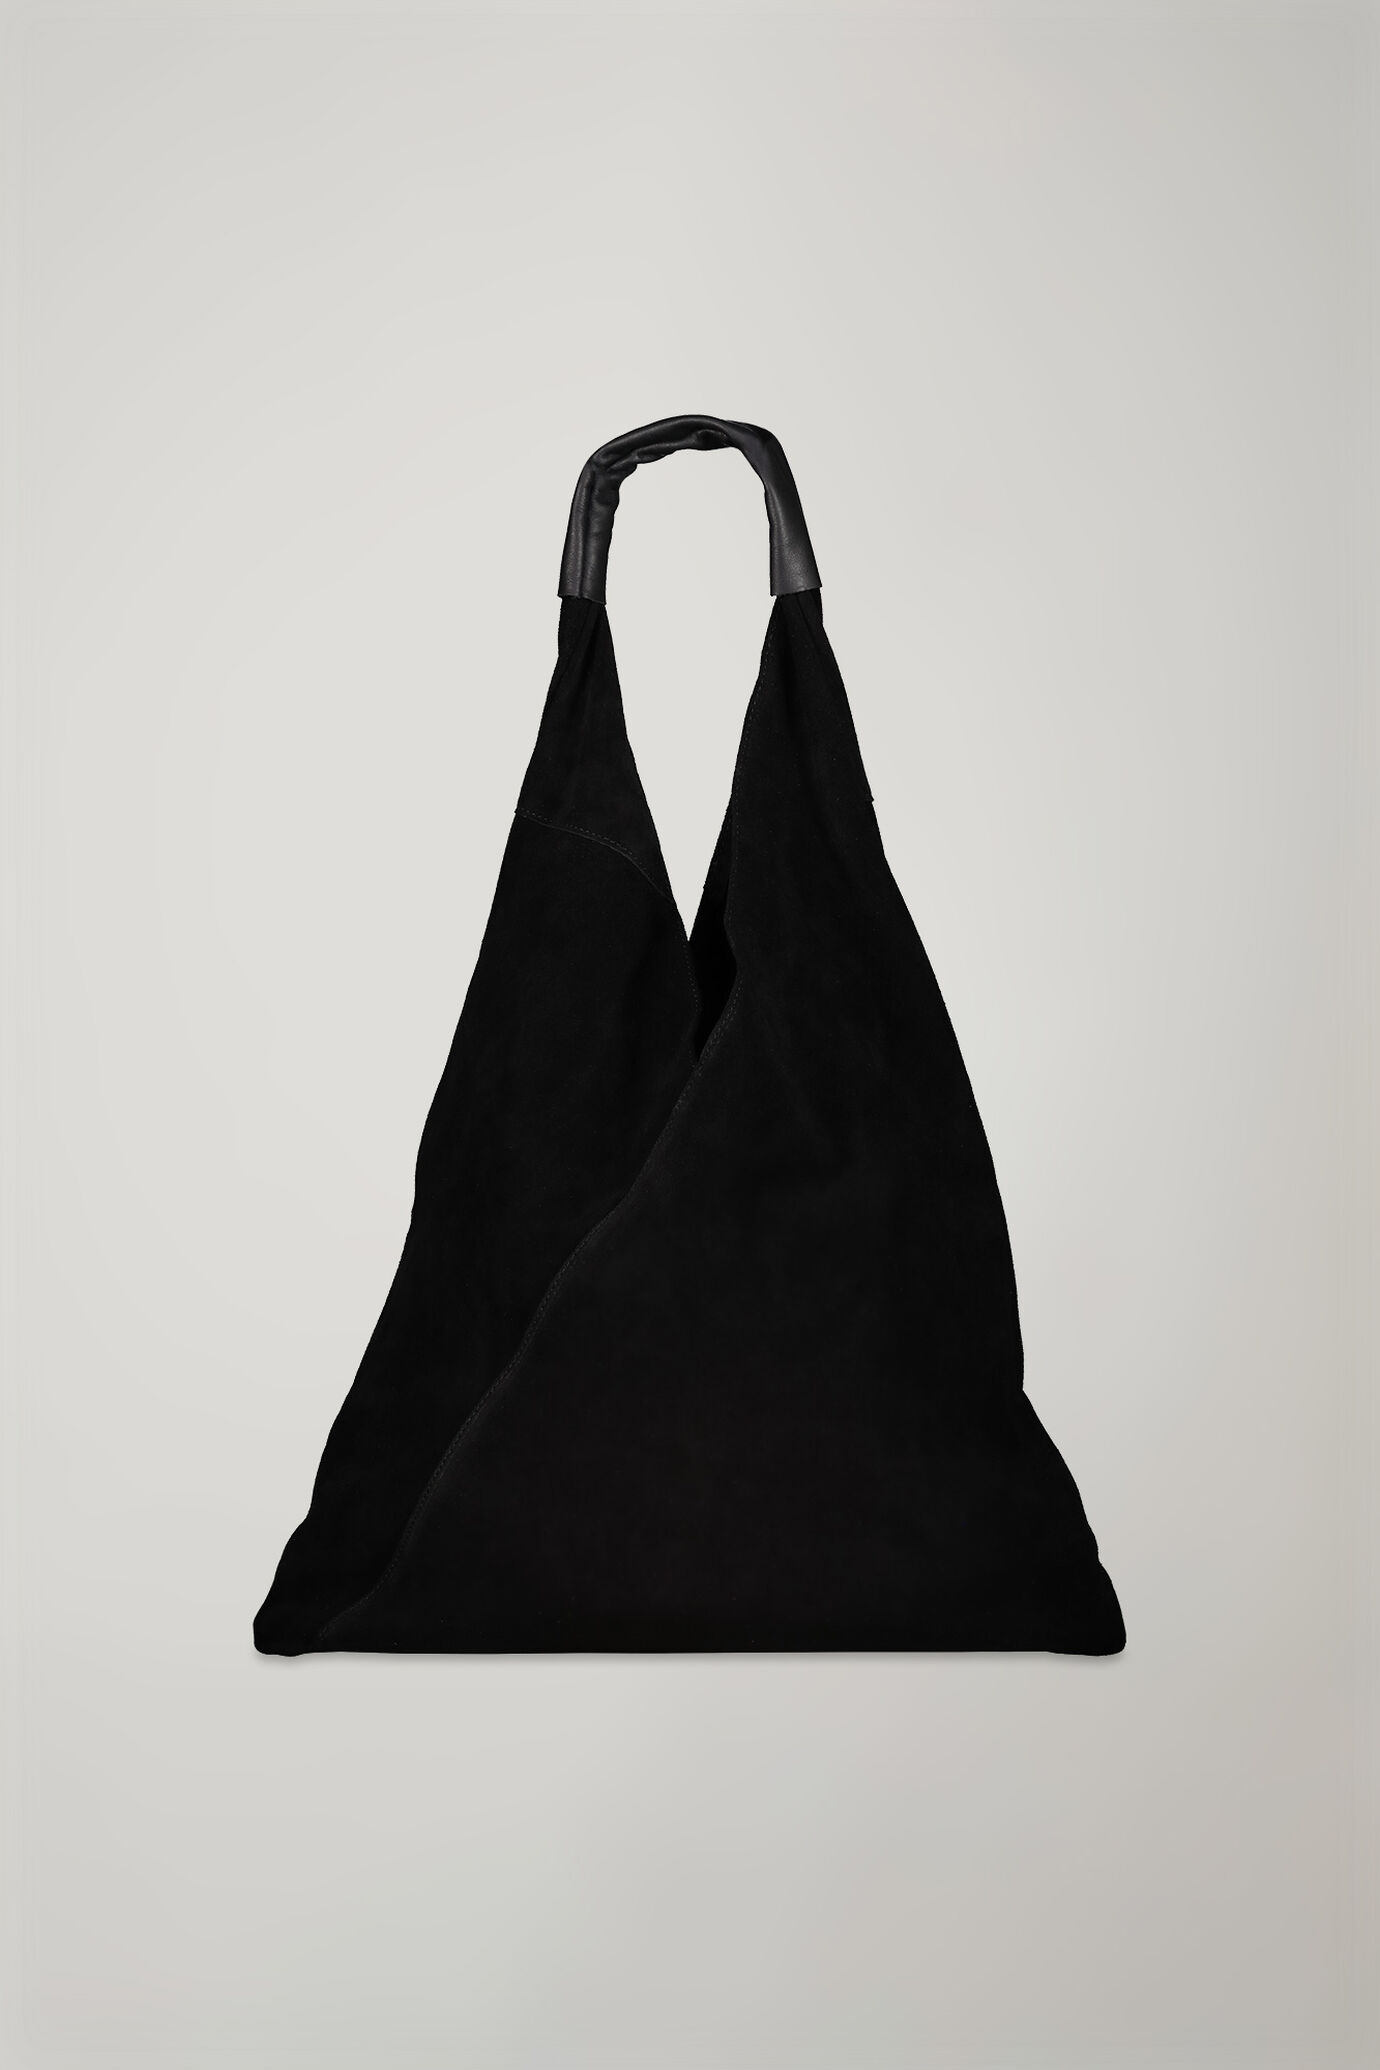 Women’s shoulder bag 100% genuine suede